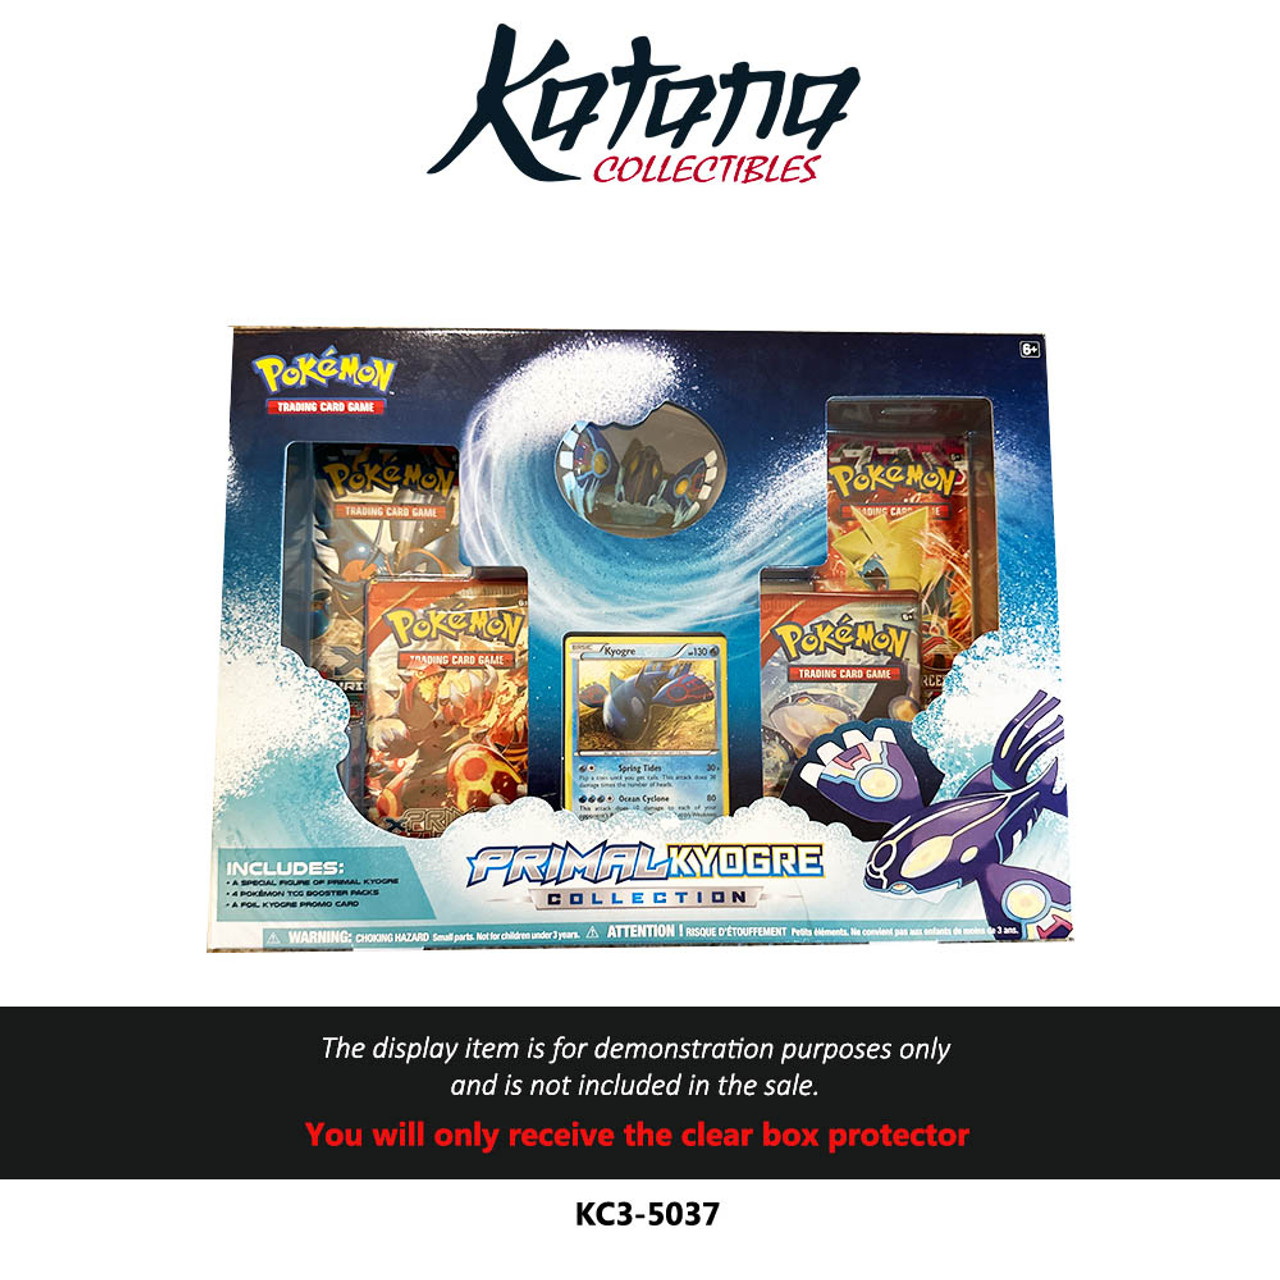 Katana Collectibles Protector For Pokémon Primal Kyogre Collection